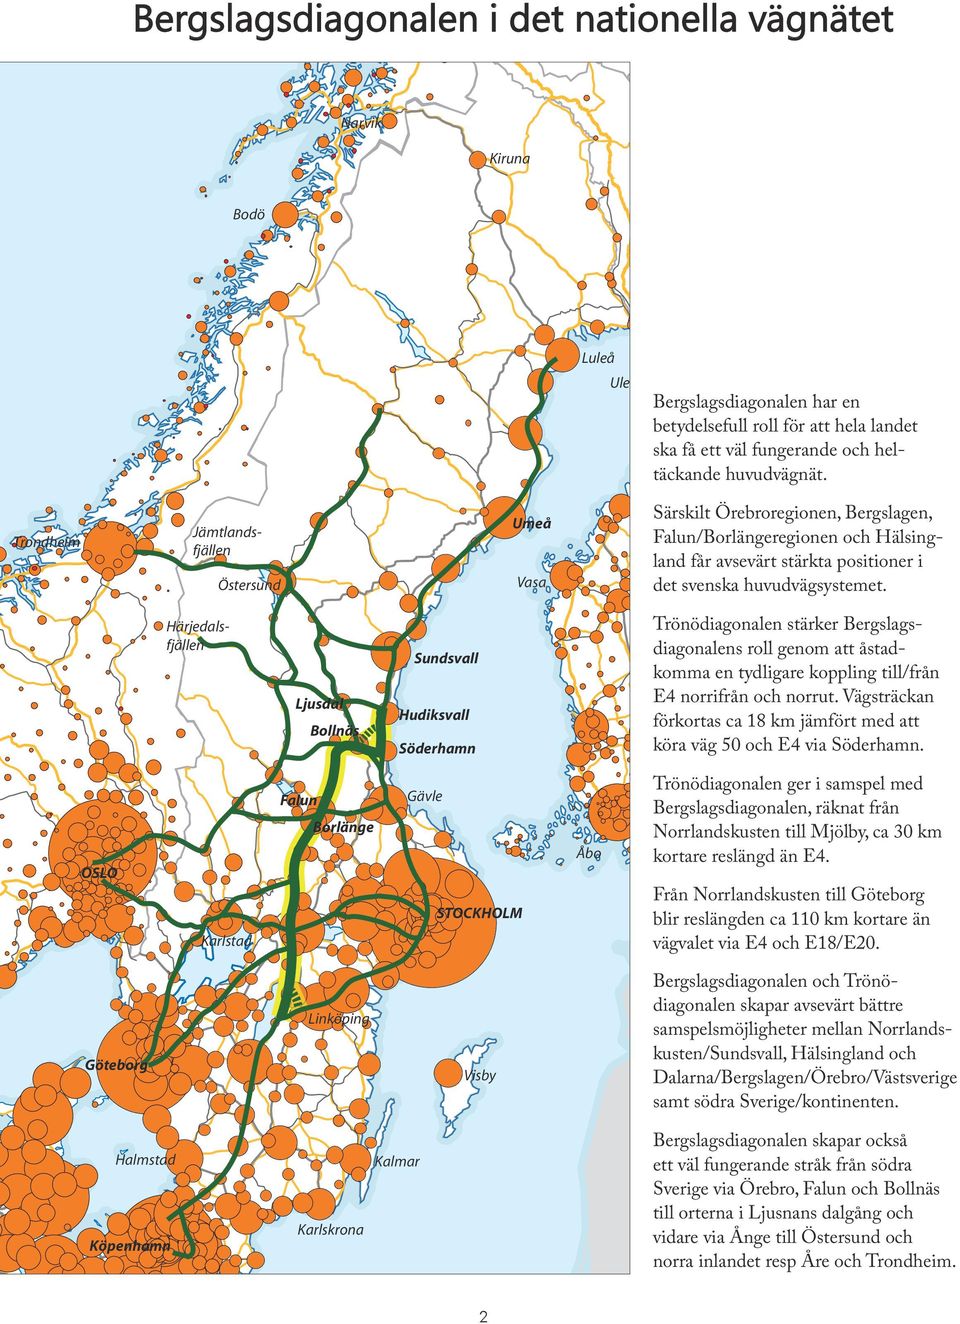 Trondheim Jämtlandsfjällen Östersund Umeå Vasa Särskilt Örebroregionen, Bergslagen, Falun/Borlängeregionen och Hälsingland får avsevärt stärkta positioner i det svenska huvudvägsystemet.